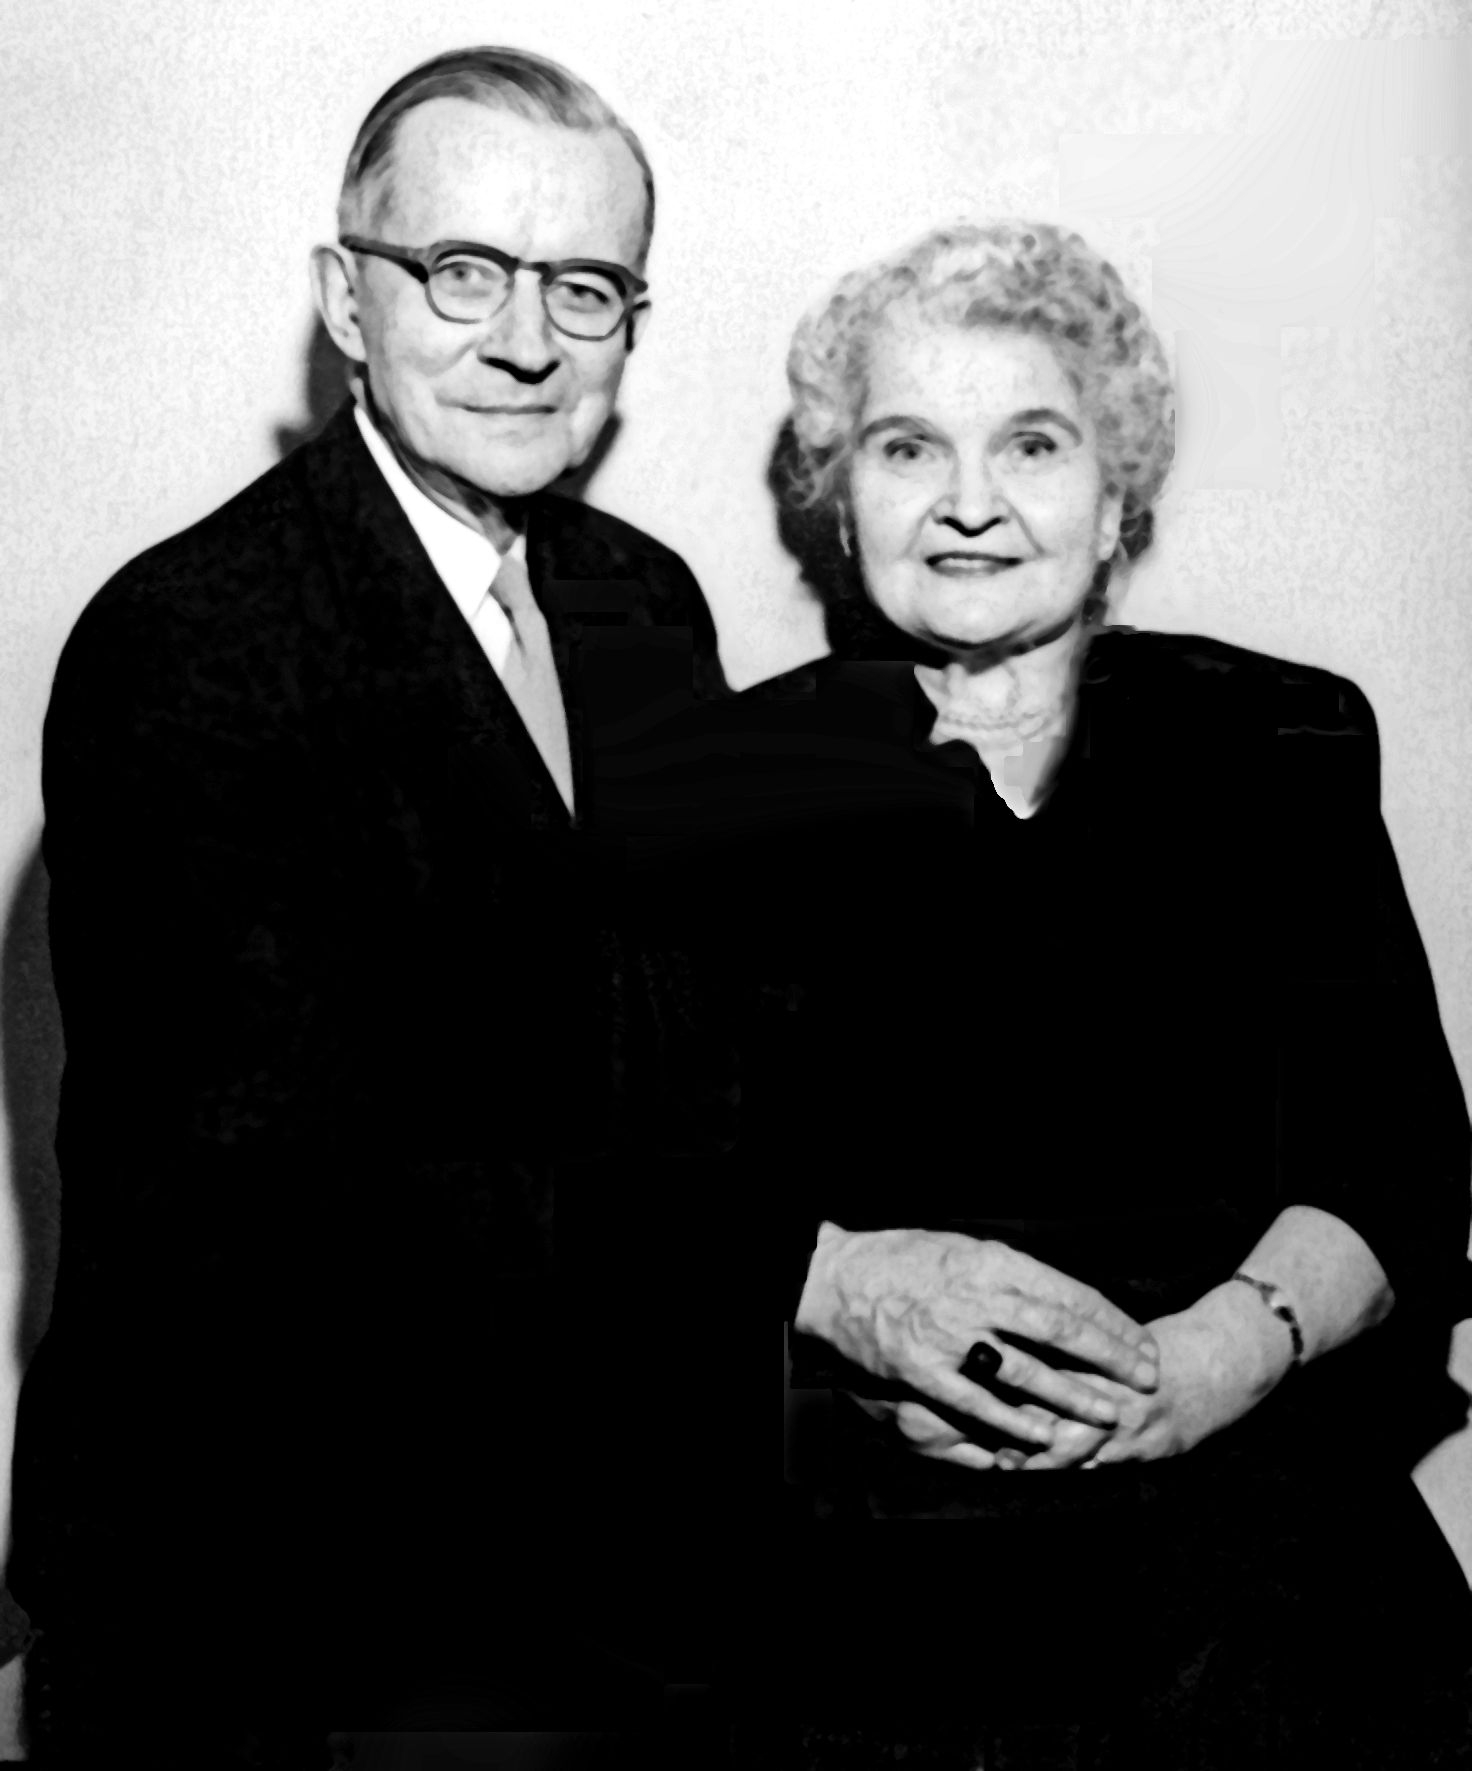 Charles and Frieda Behnke